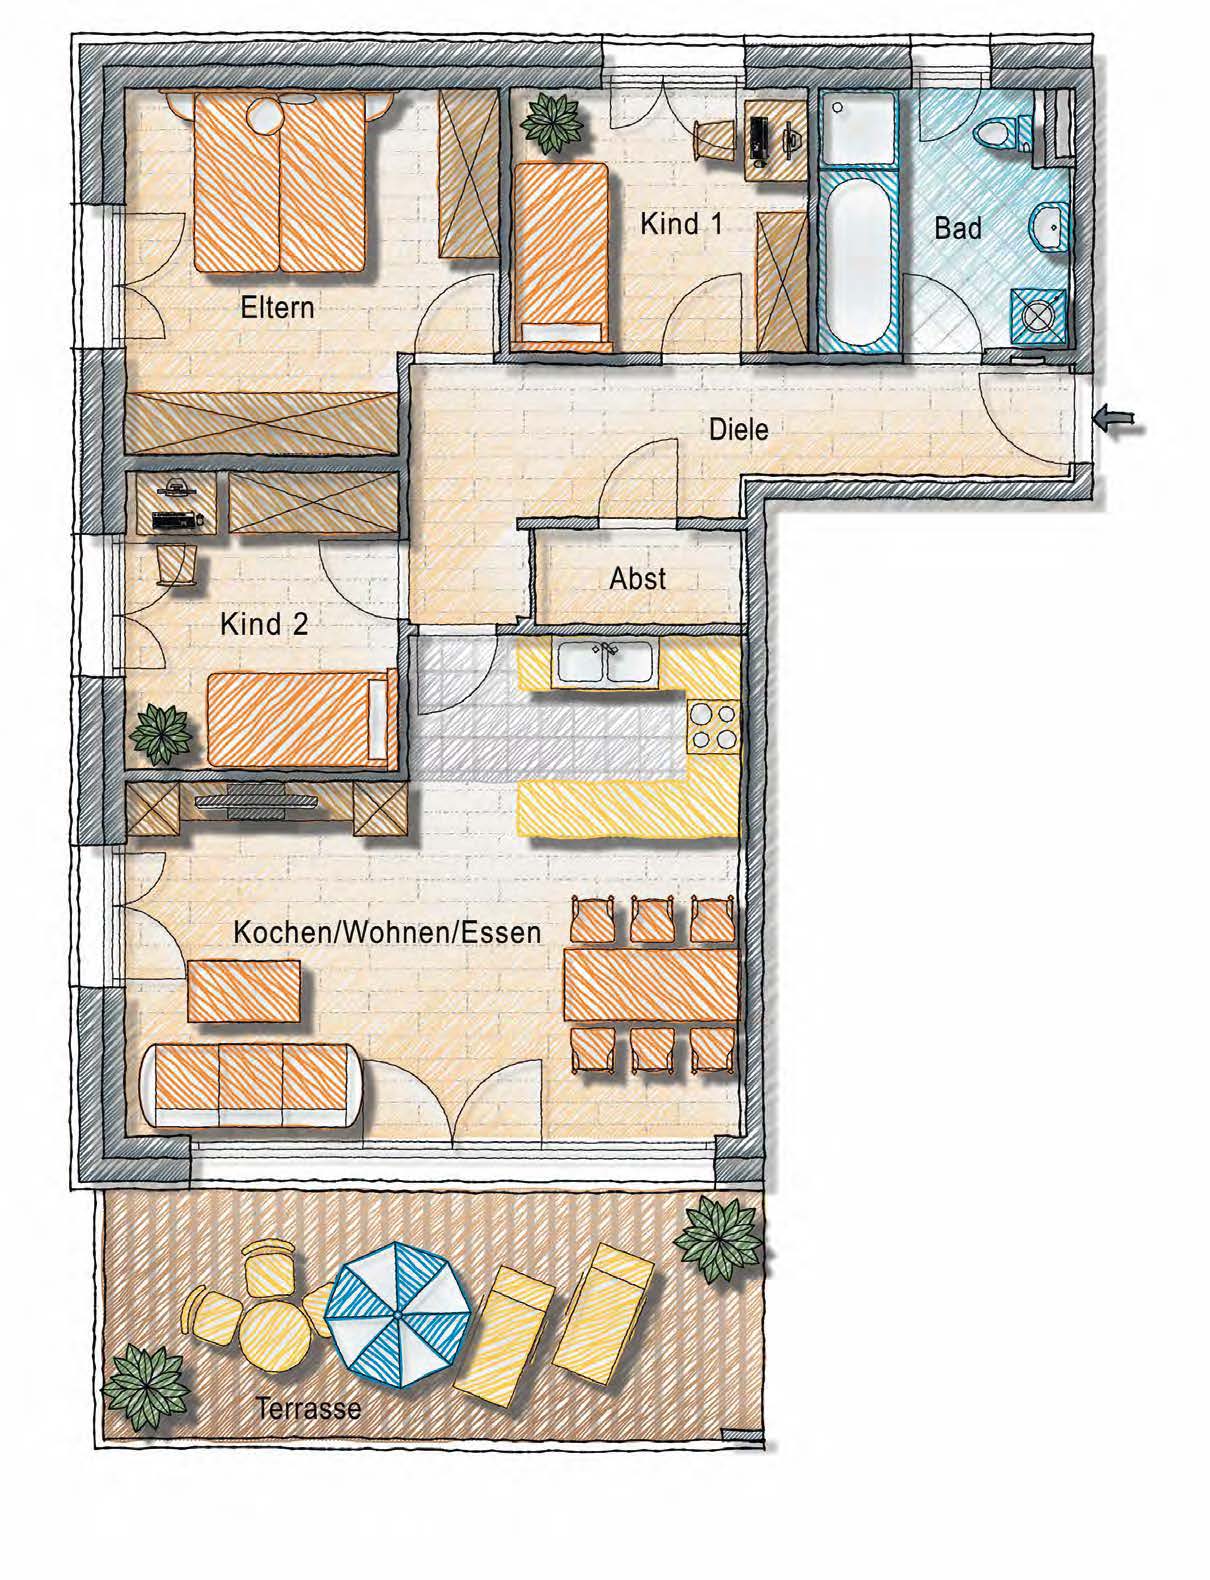 Top 5a Obergeschoss 4-Zimmer-Wohnung Wohnen / Kochen Eltern Kind 1 Kind 2 Bad/WC Abstellraum Diele Wohnfl.